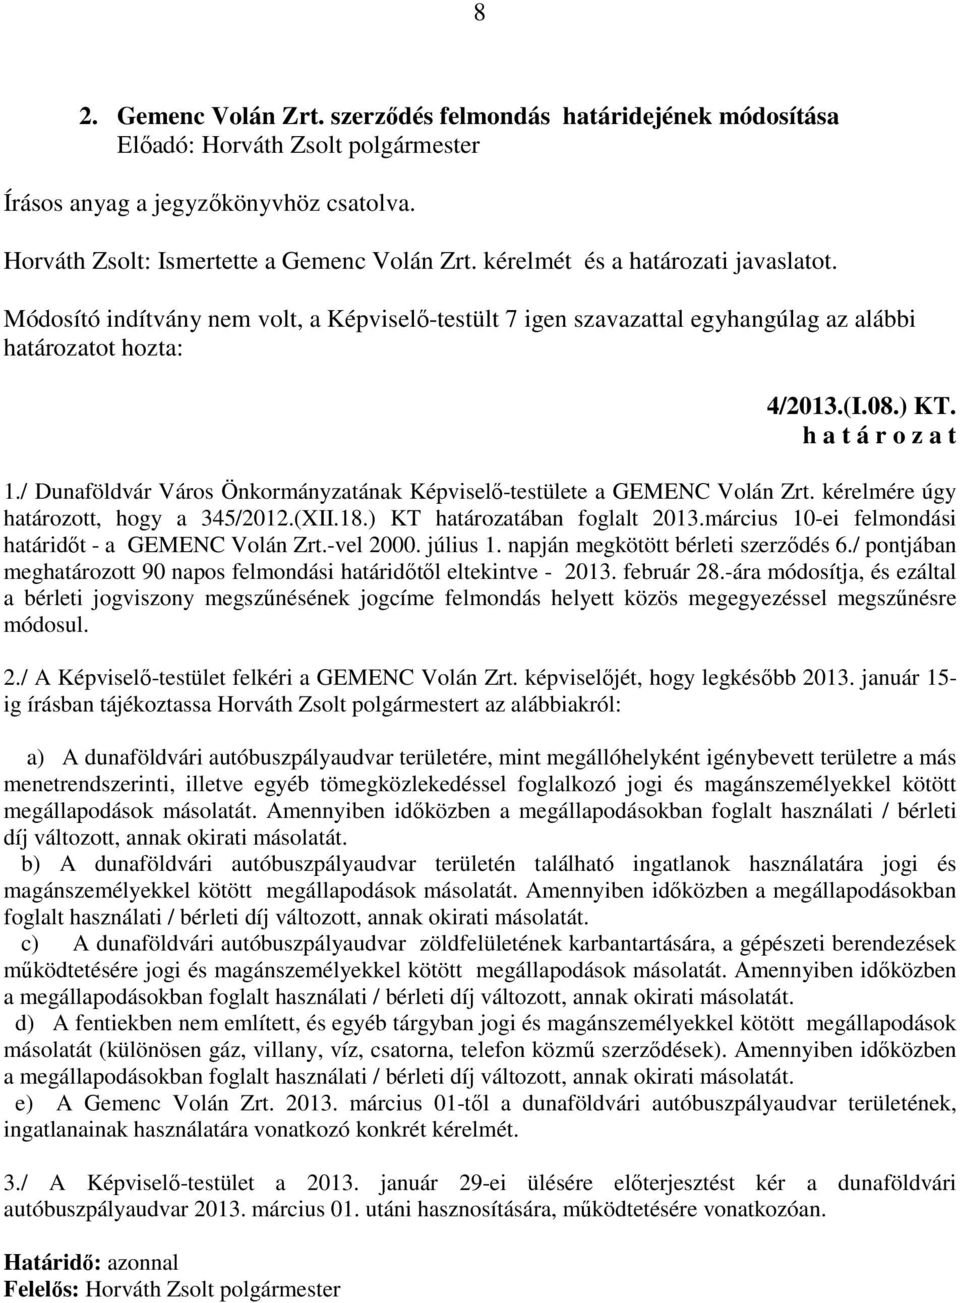 / Dunaföldvár Város Önkormányzatának Képviselő-testülete a GEMENC Volán Zrt. kérelmére úgy határozott, hogy a 345/2012.(XII.18.) KT határozatában foglalt 2013.